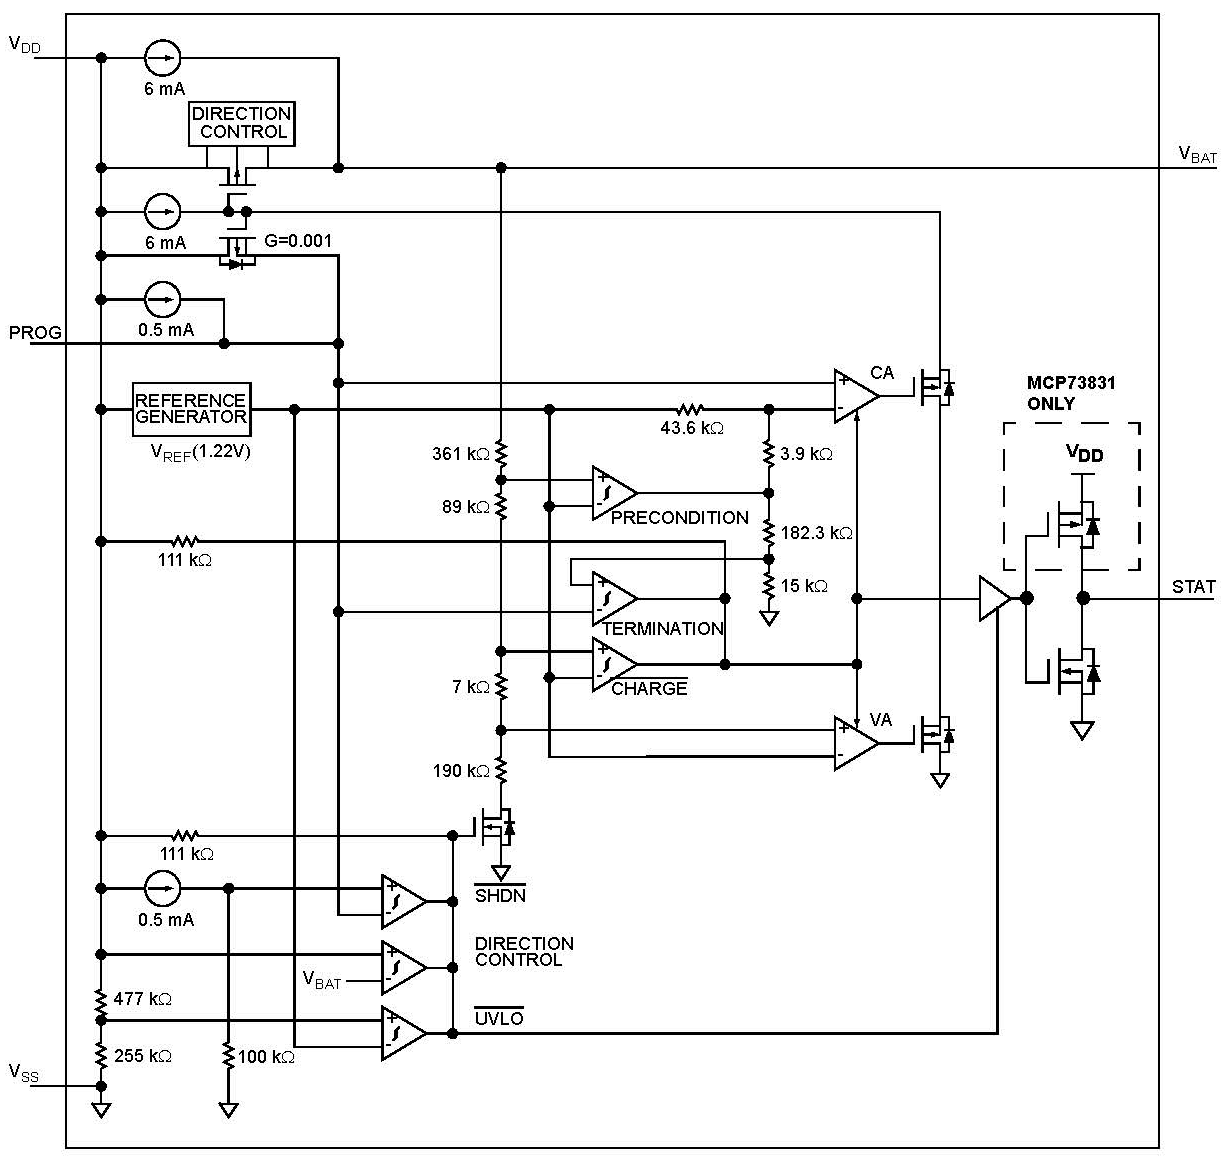 MCP73831 Functional Block Diagram